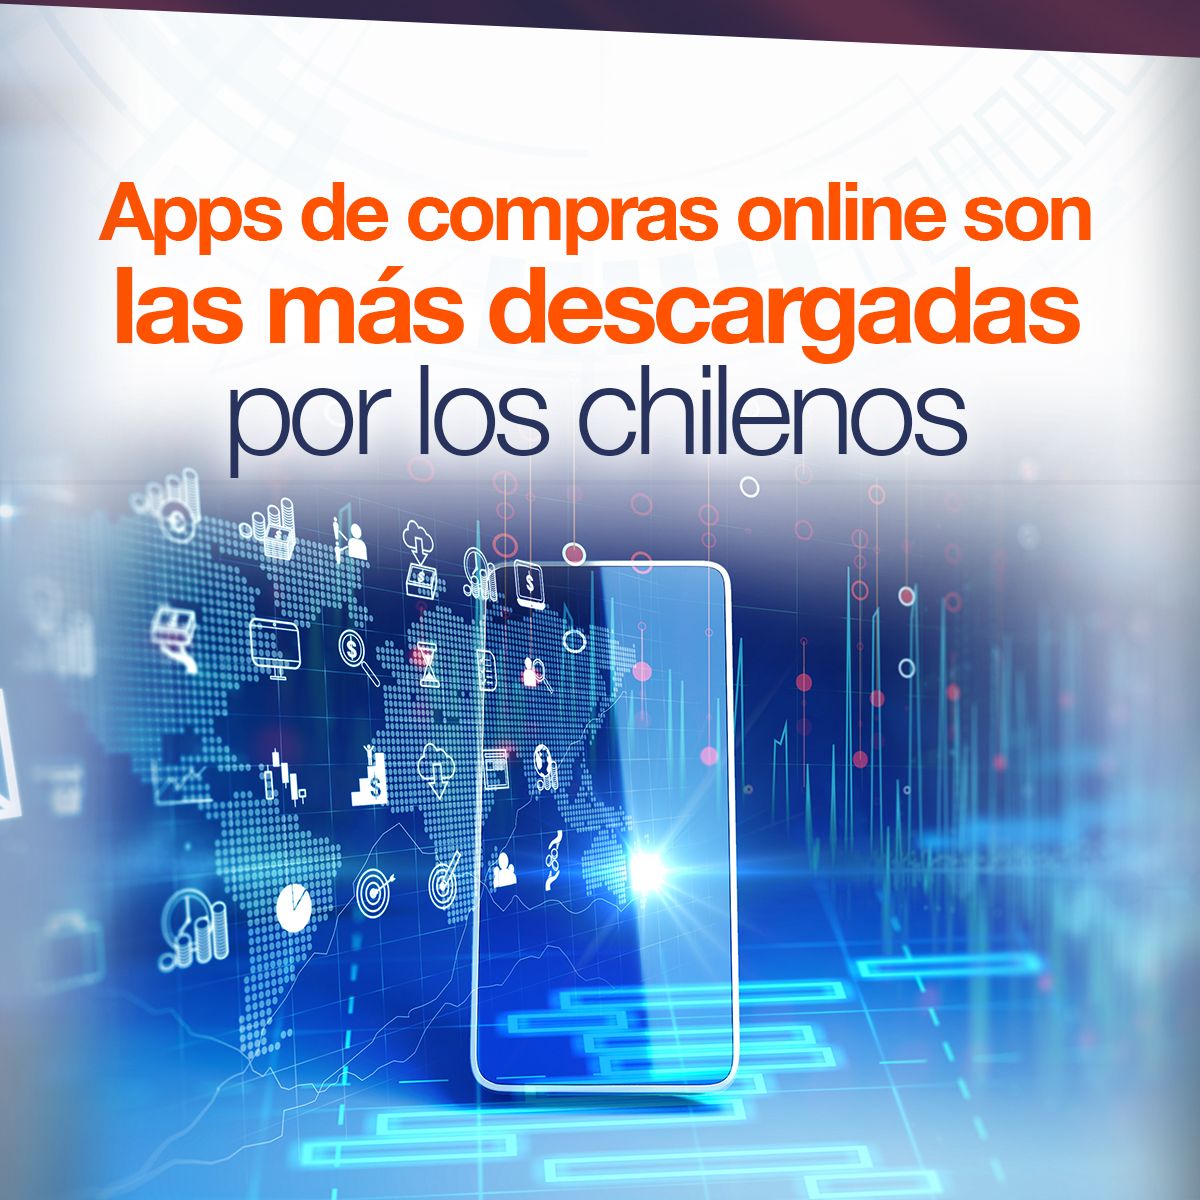 Apps de compras online son las más descargadas por los chilenos